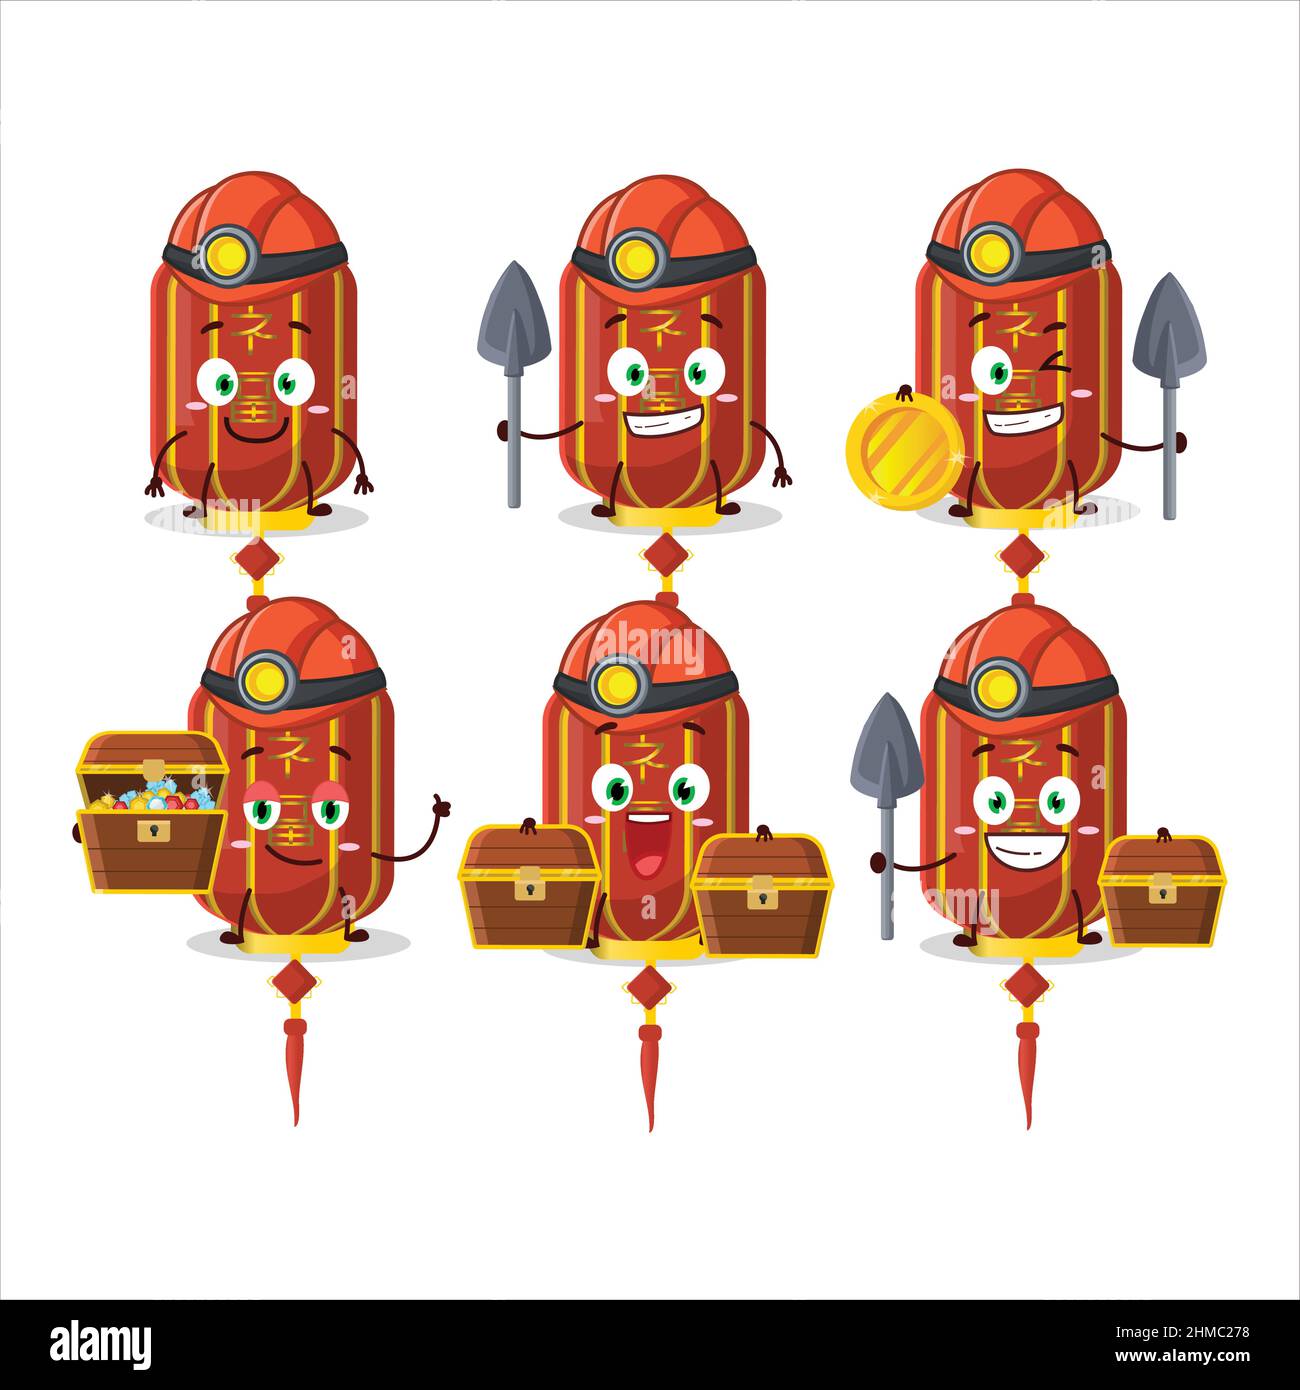 mineurs rouge chinois longue lampe adorable personnage mascotte portant un casque. Illustration vectorielle Illustration de Vecteur